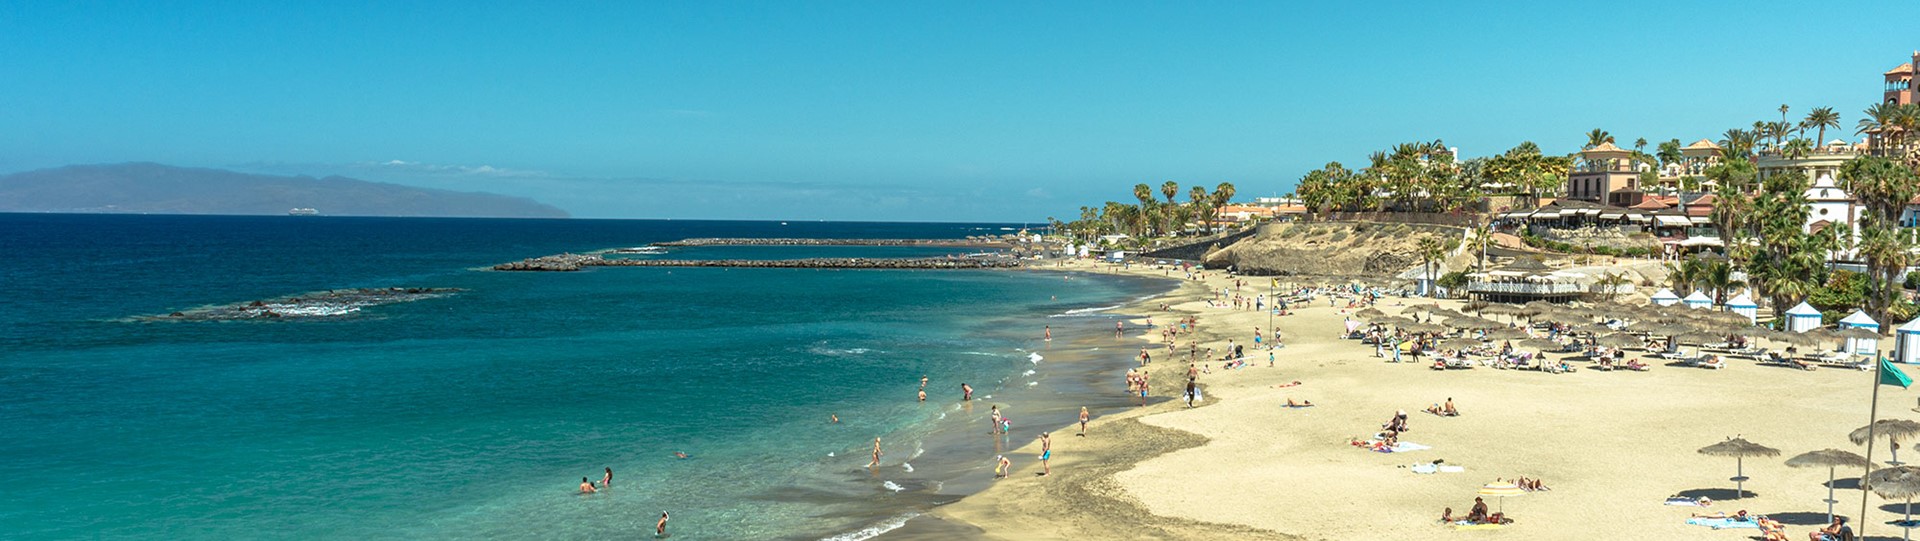 Tenerife, waar emoties ontwaken